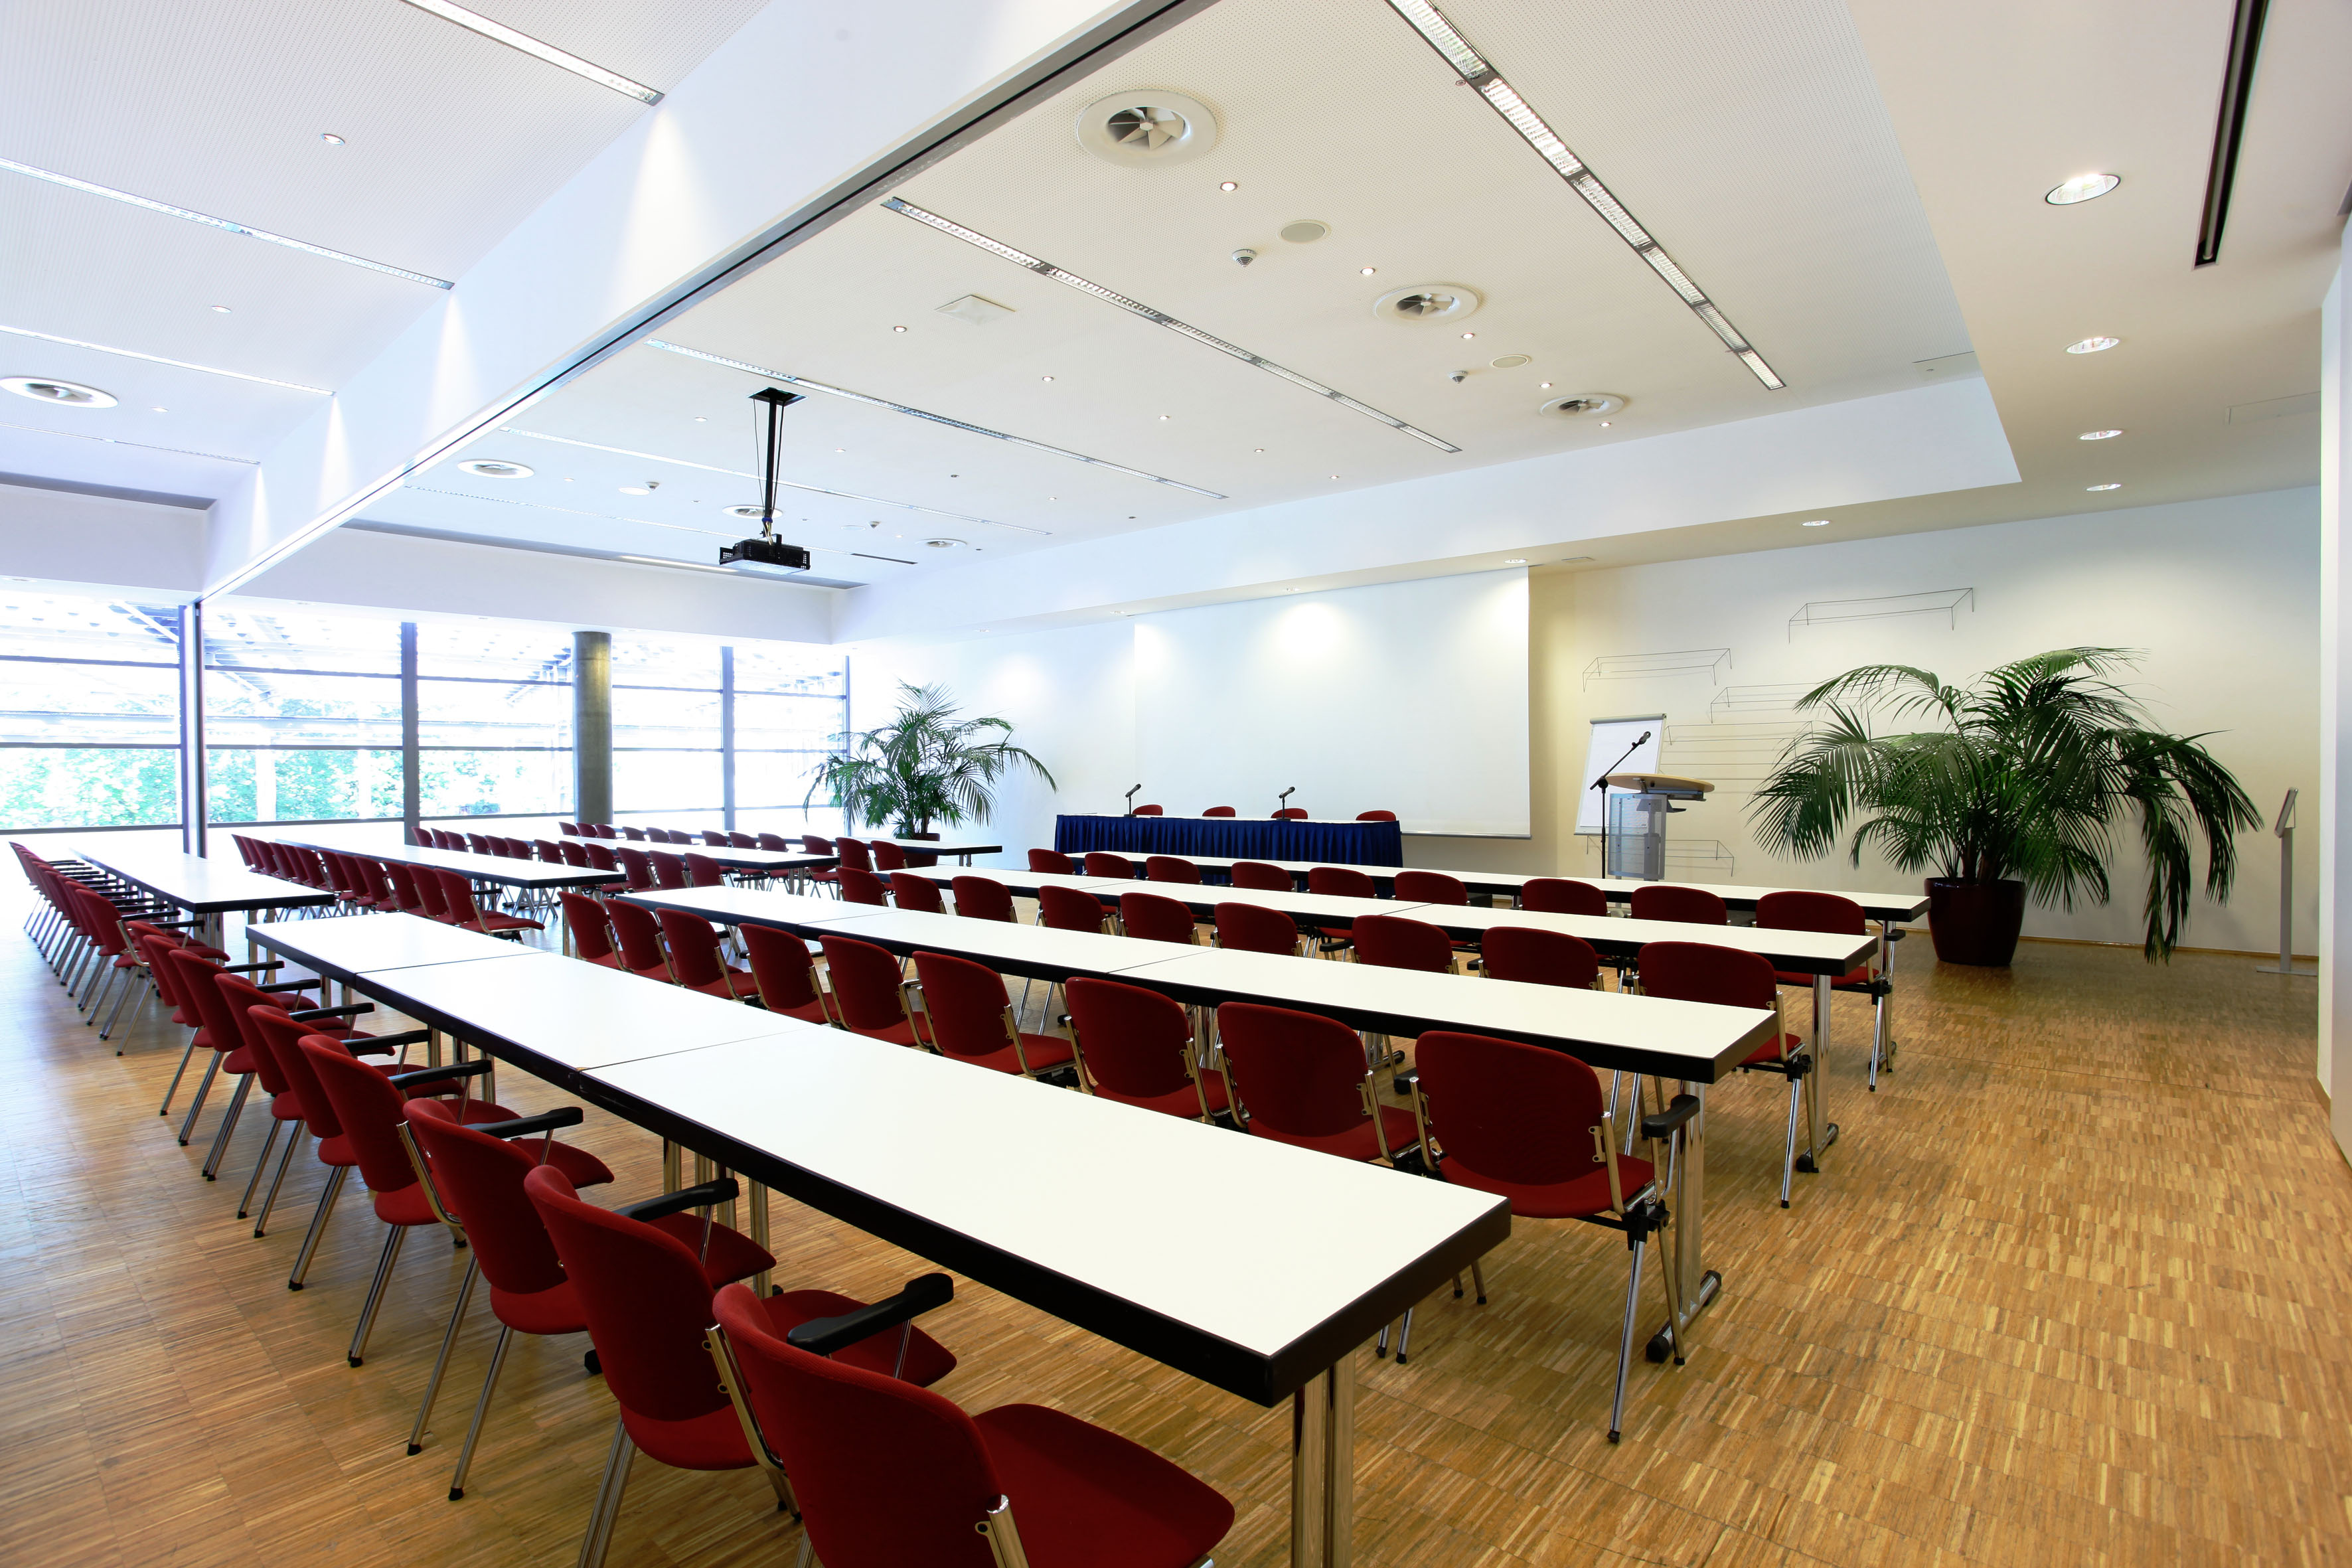 Parlamentarische Bestuhlung im Tagungsraum im RuhrCongress Bochum. Im Hintergrund hängt eine große Leinwand, davor steht ein Plenumstisch, sowie ein Rednerpult. Links und rechts steht jeweils eine große grüne Pflanze.